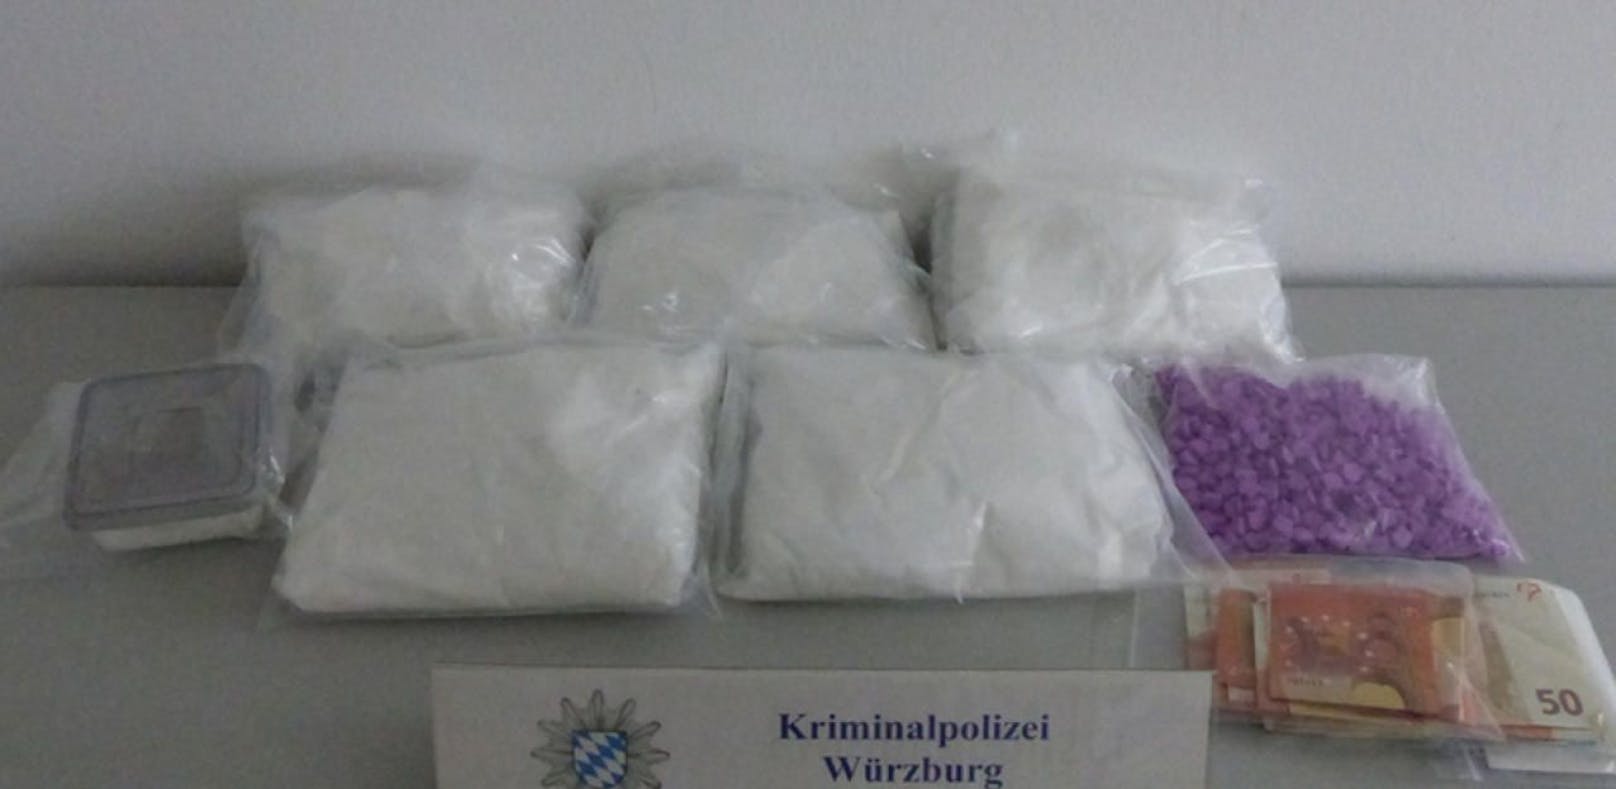 Die Polizei stellte insgesamt 6 Kilo Amphetamin, 900 Ecstasy-Pillen, 100 Gramm Marihuana und eine Schusswaffe sicher 